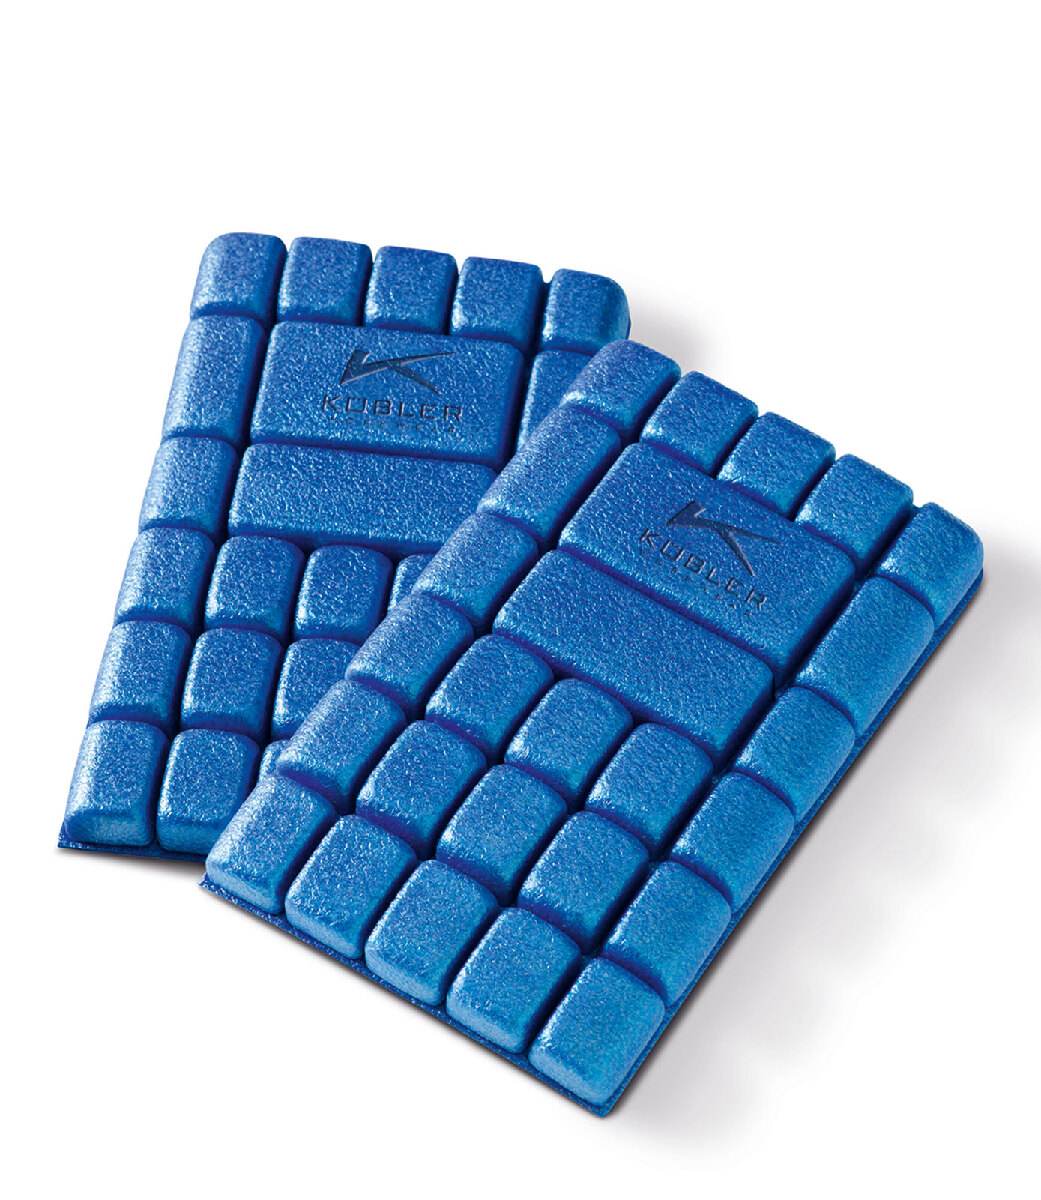 KÜBLER Kniepolster in Mittelblau, 1 Paar, weiche Kniepads für lange Arbeiten auf dem Boden